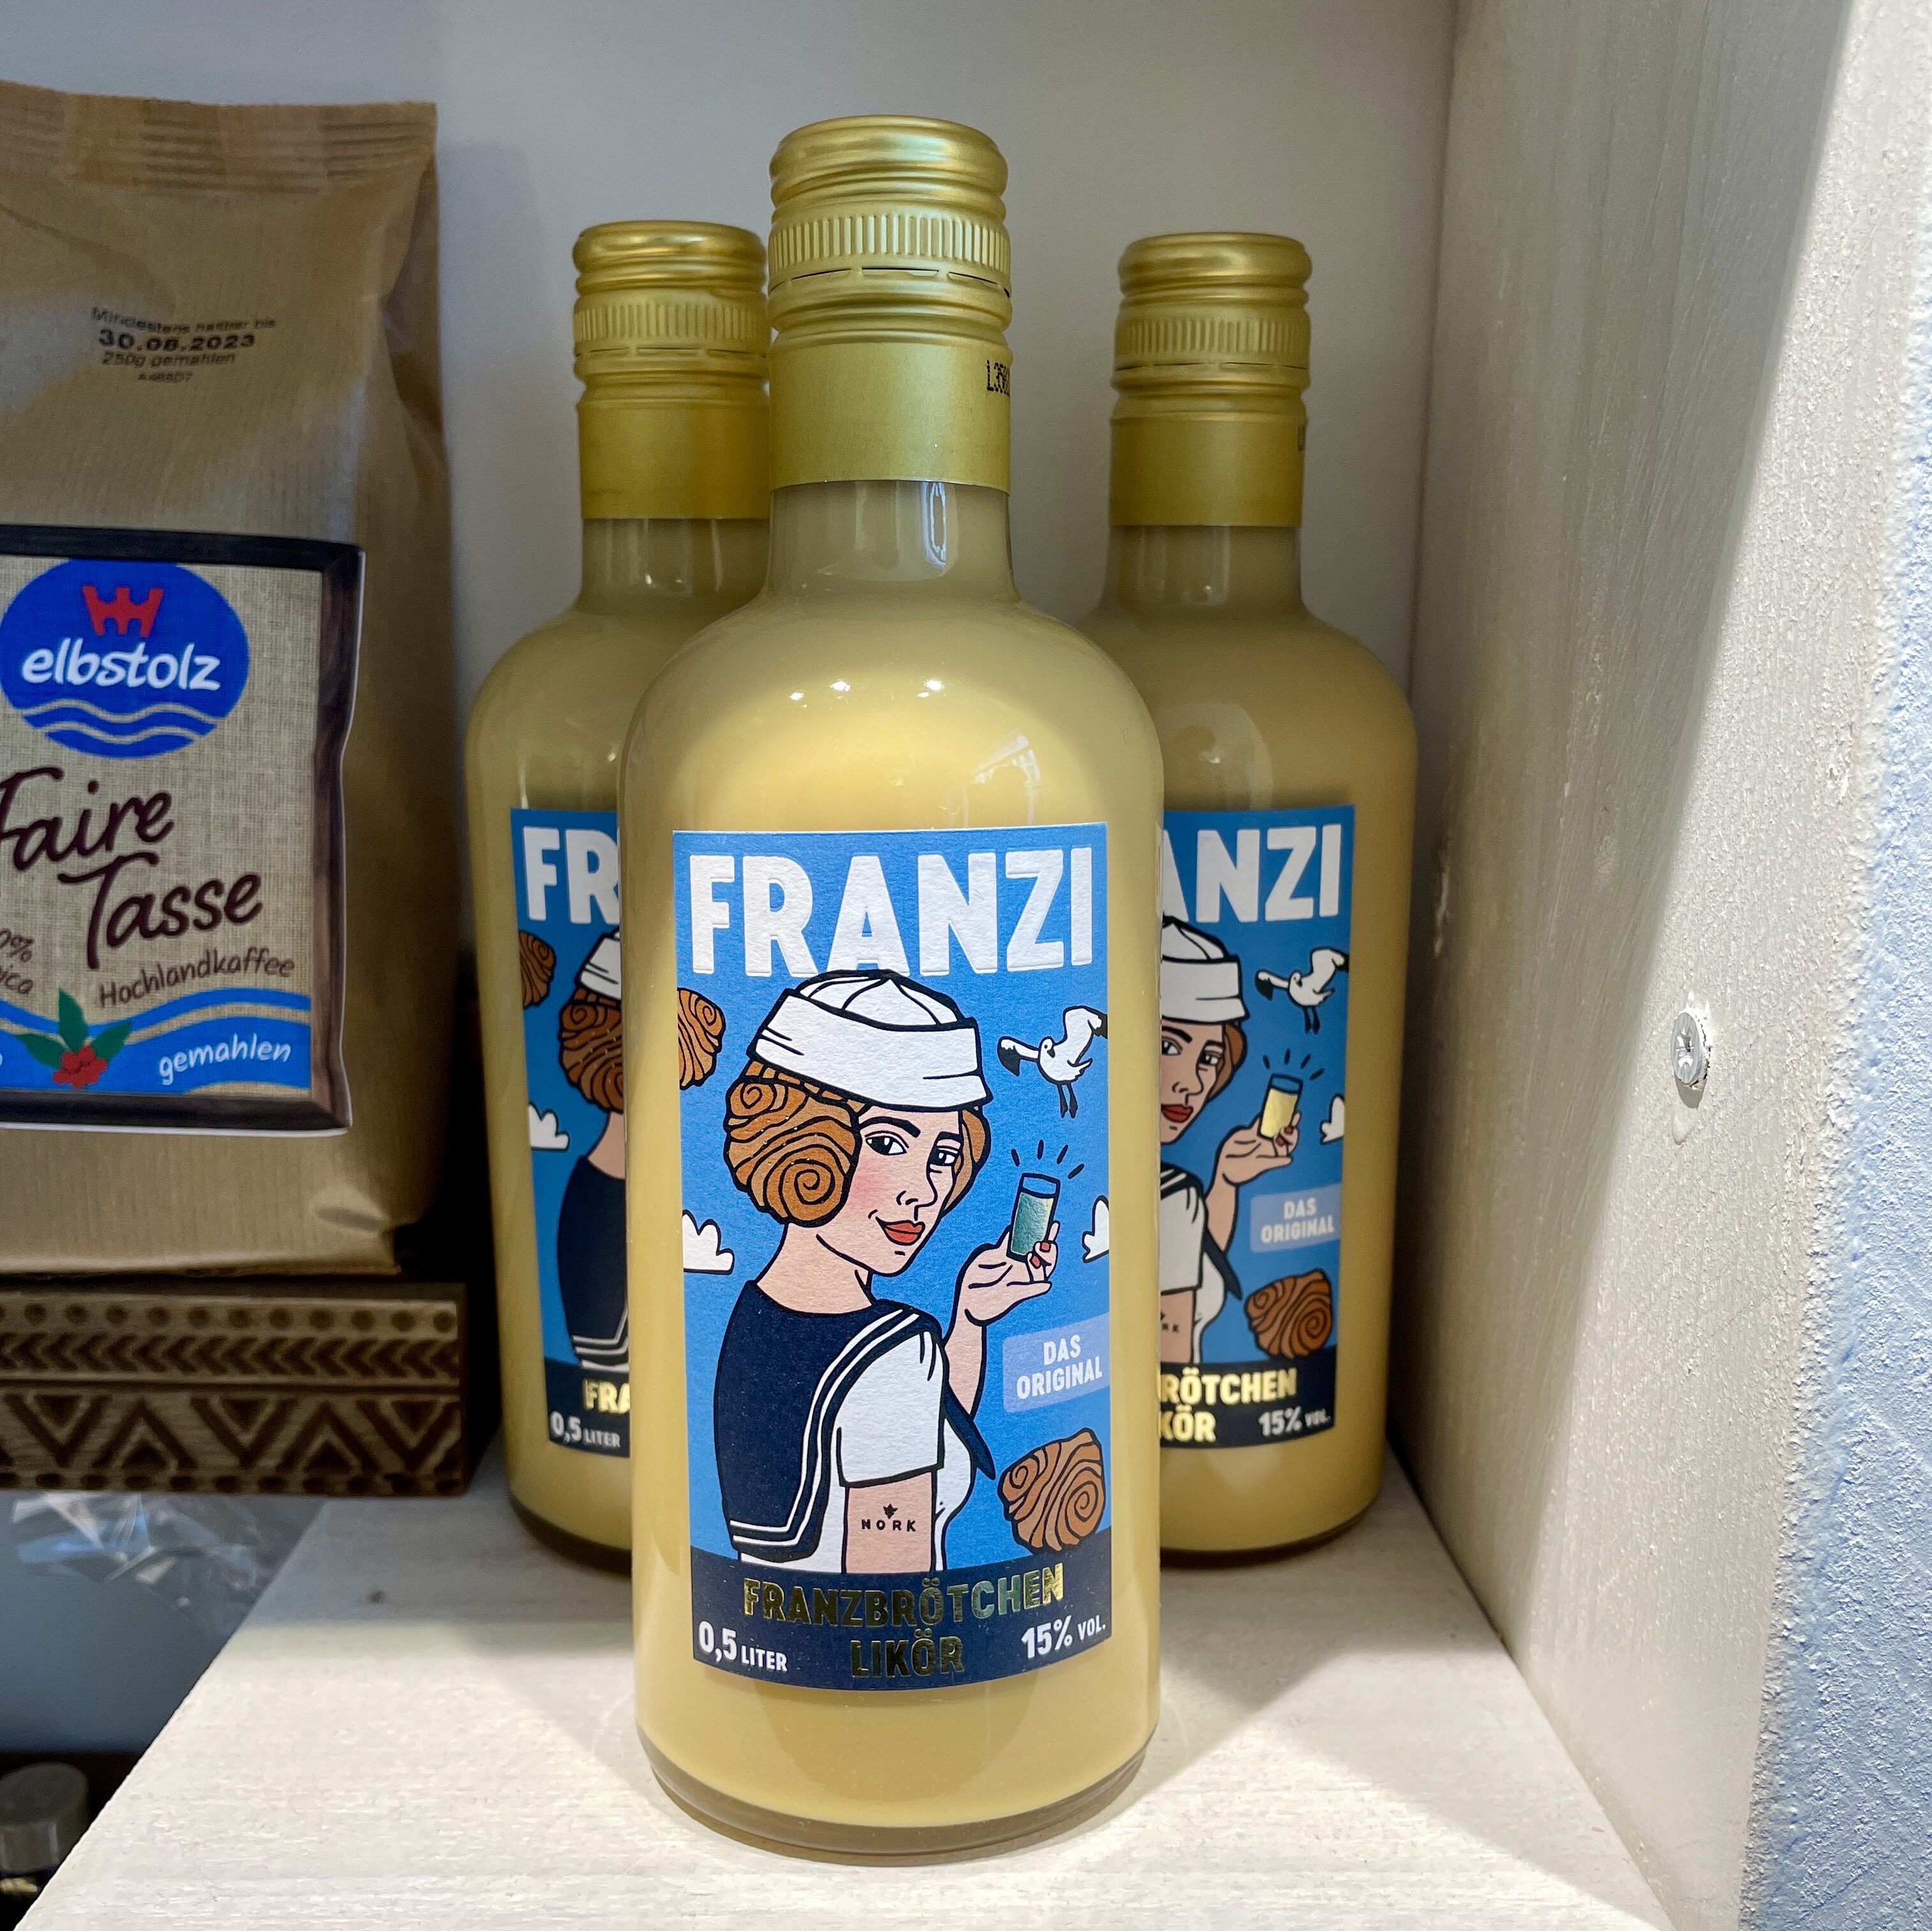 Franzi Franzbrötchenlikör in Hamburg kaufen  – bei elbstolz in Ottensen